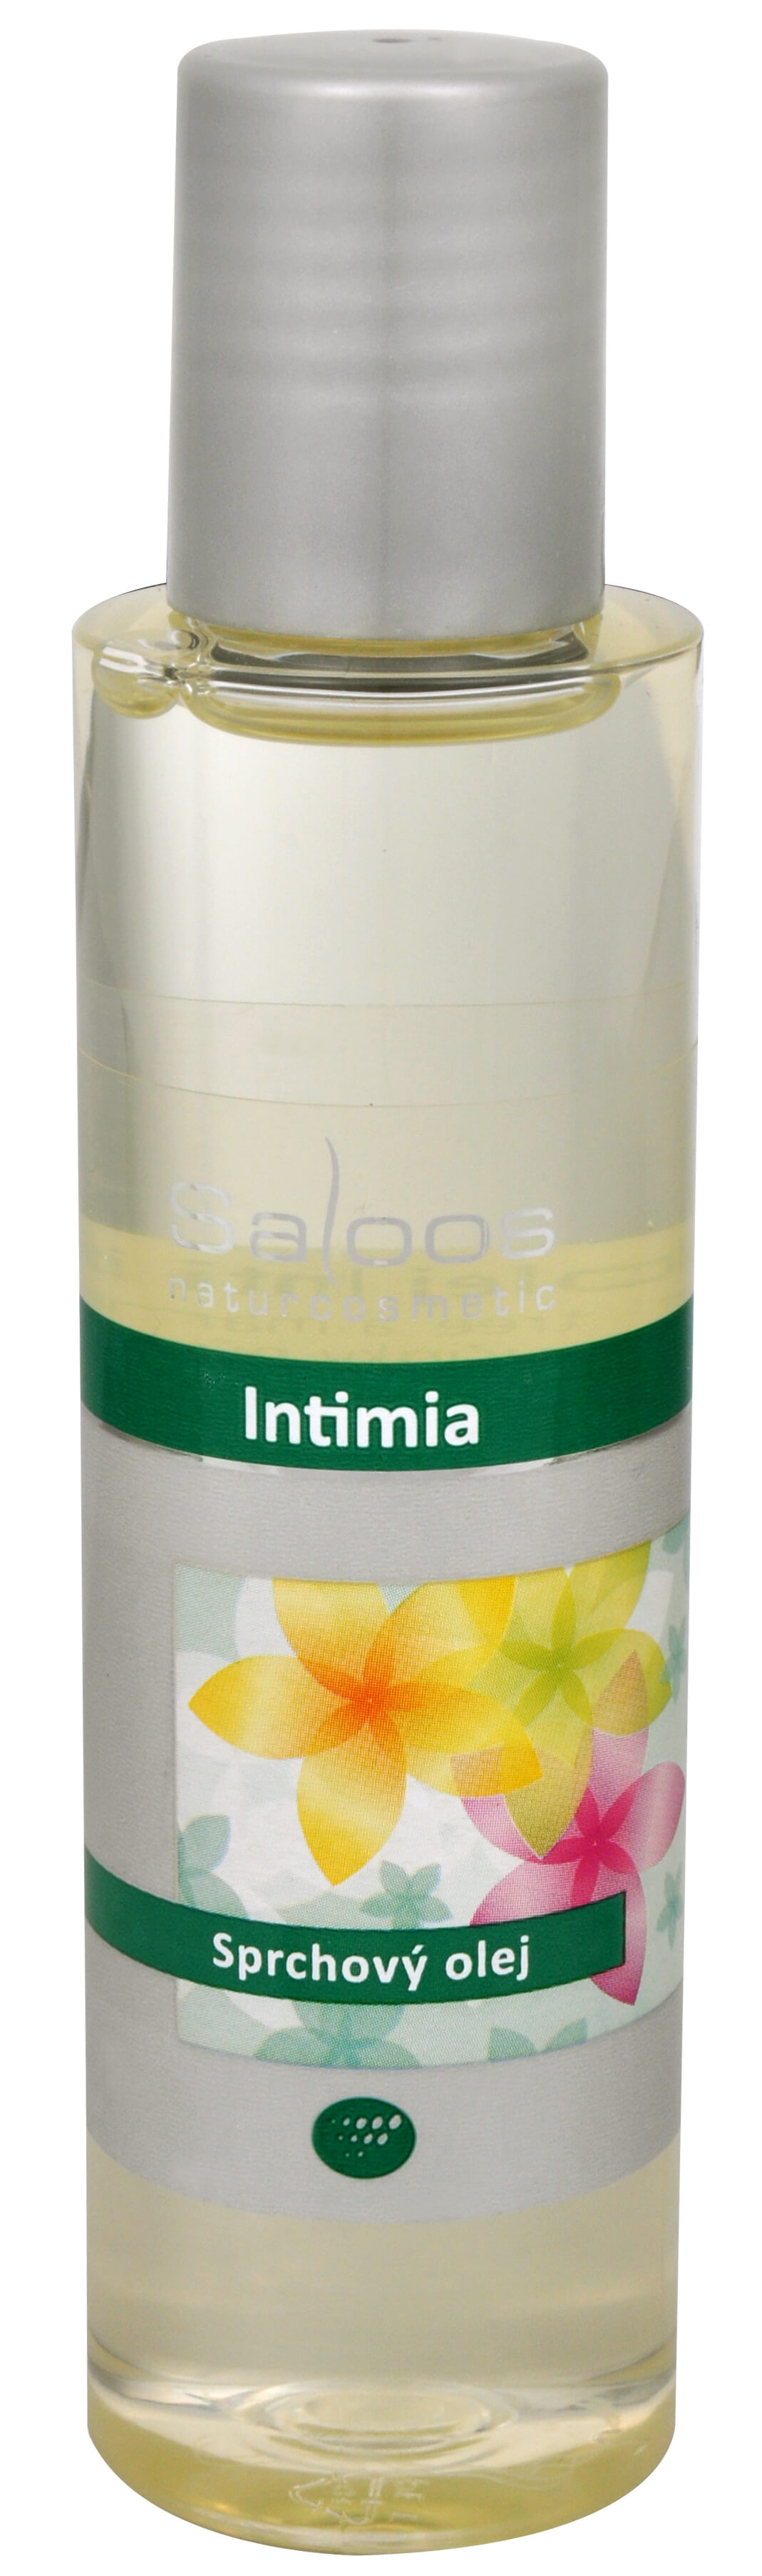 Zobrazit detail výrobku Saloos Sprchový olej - Intimia 125 ml